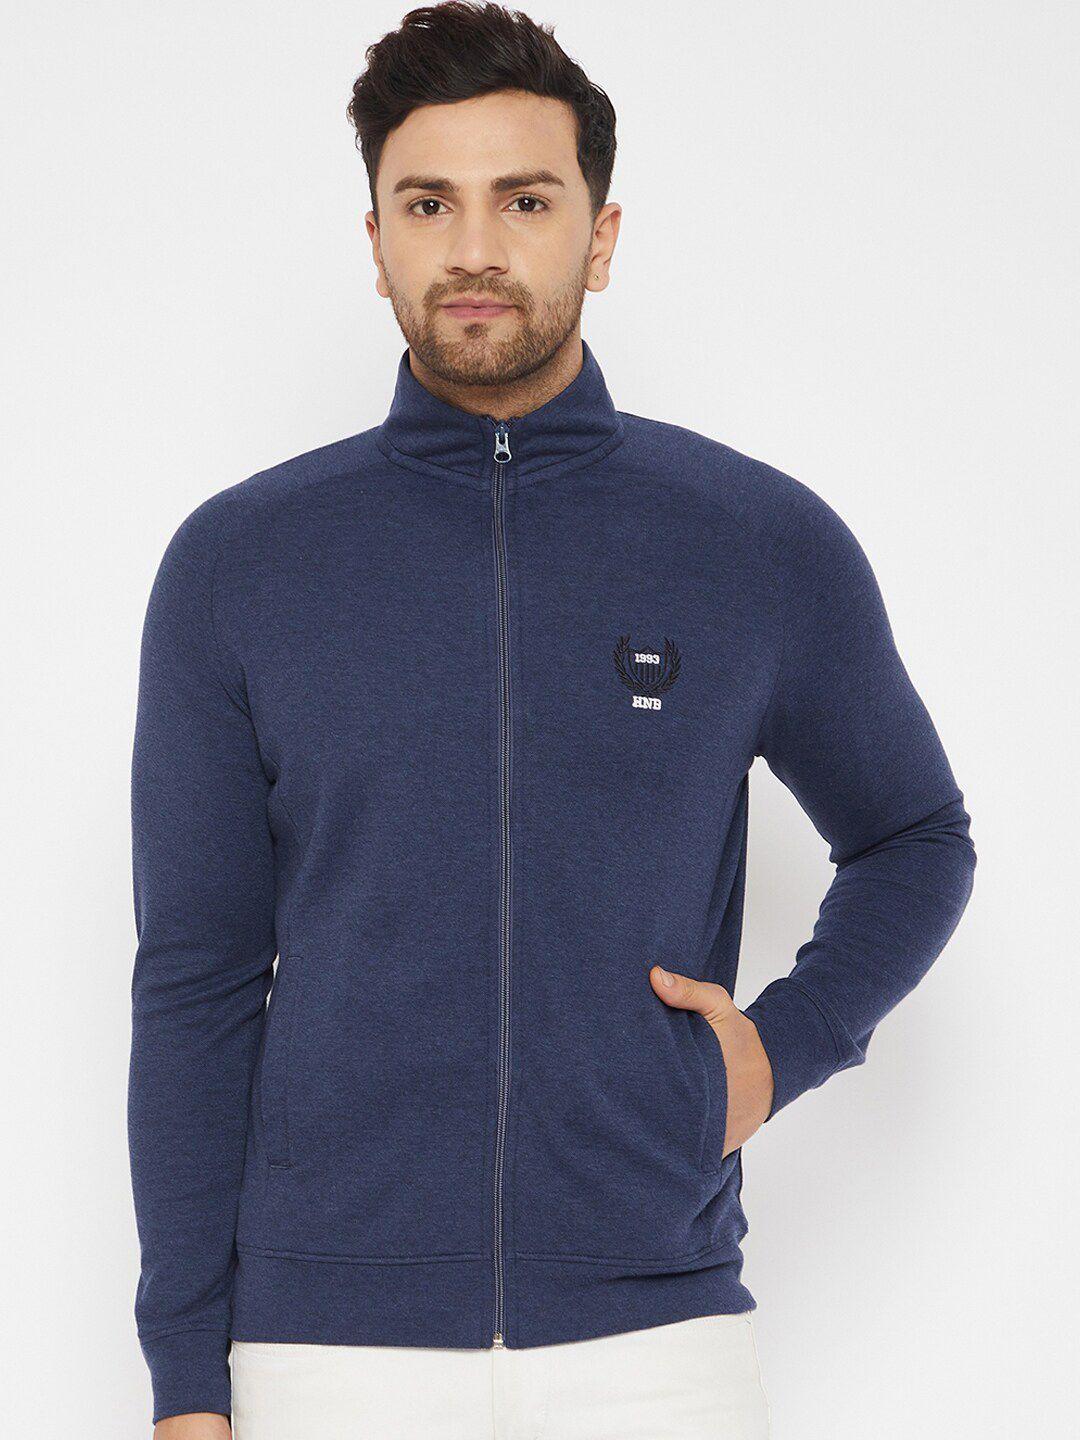 harbor-n-bay-men-navy-blue-solid-high-neck-front-open-cotton-sweatshirt